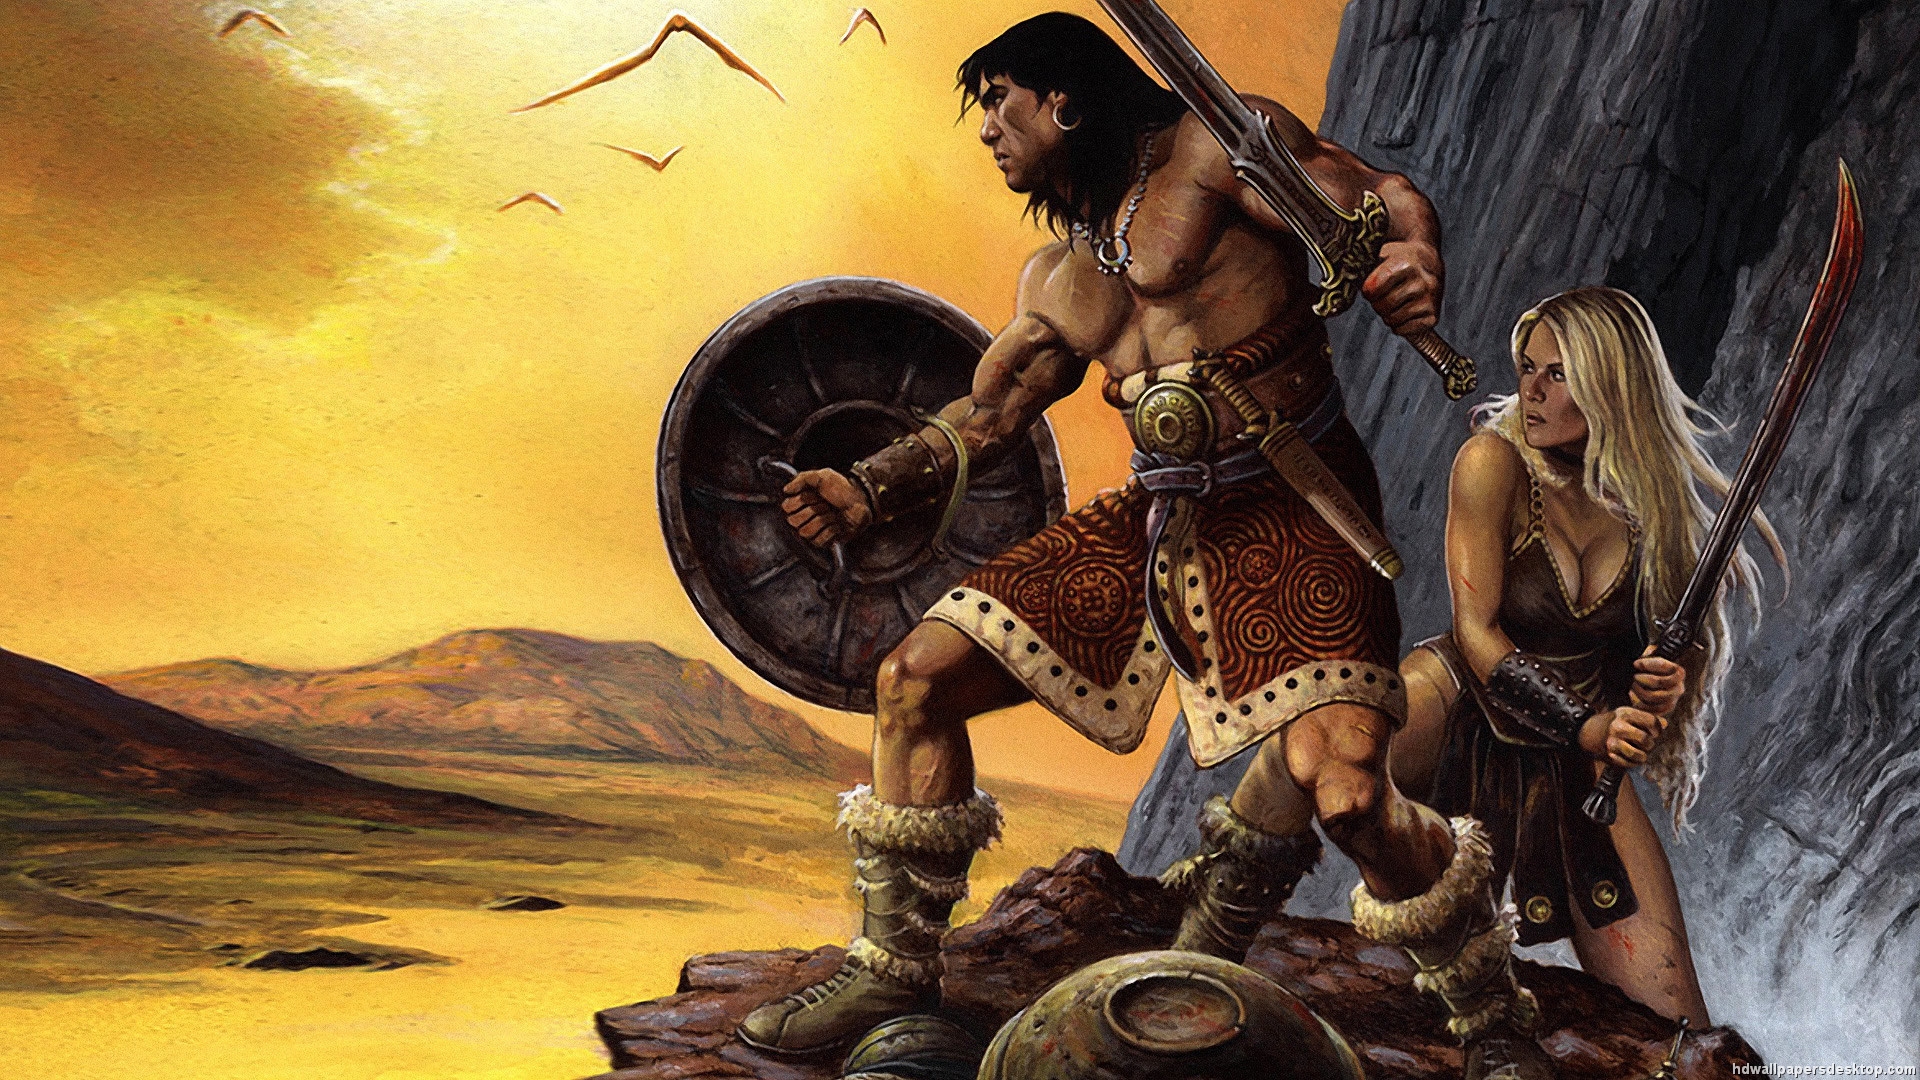 Conan the barbarian wallpaper